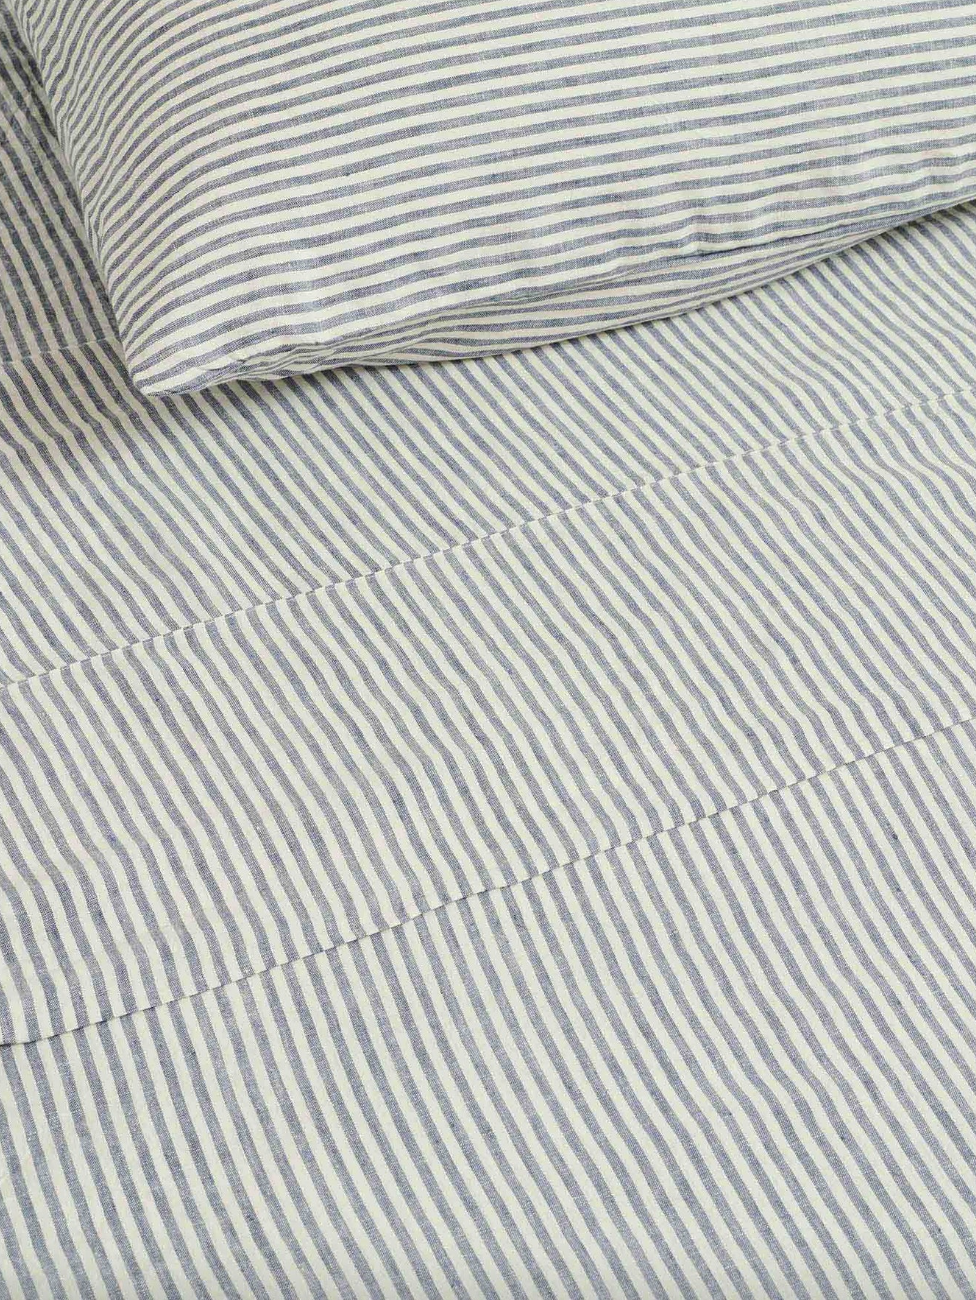 Linen Flat Sheet - Blue Stripes